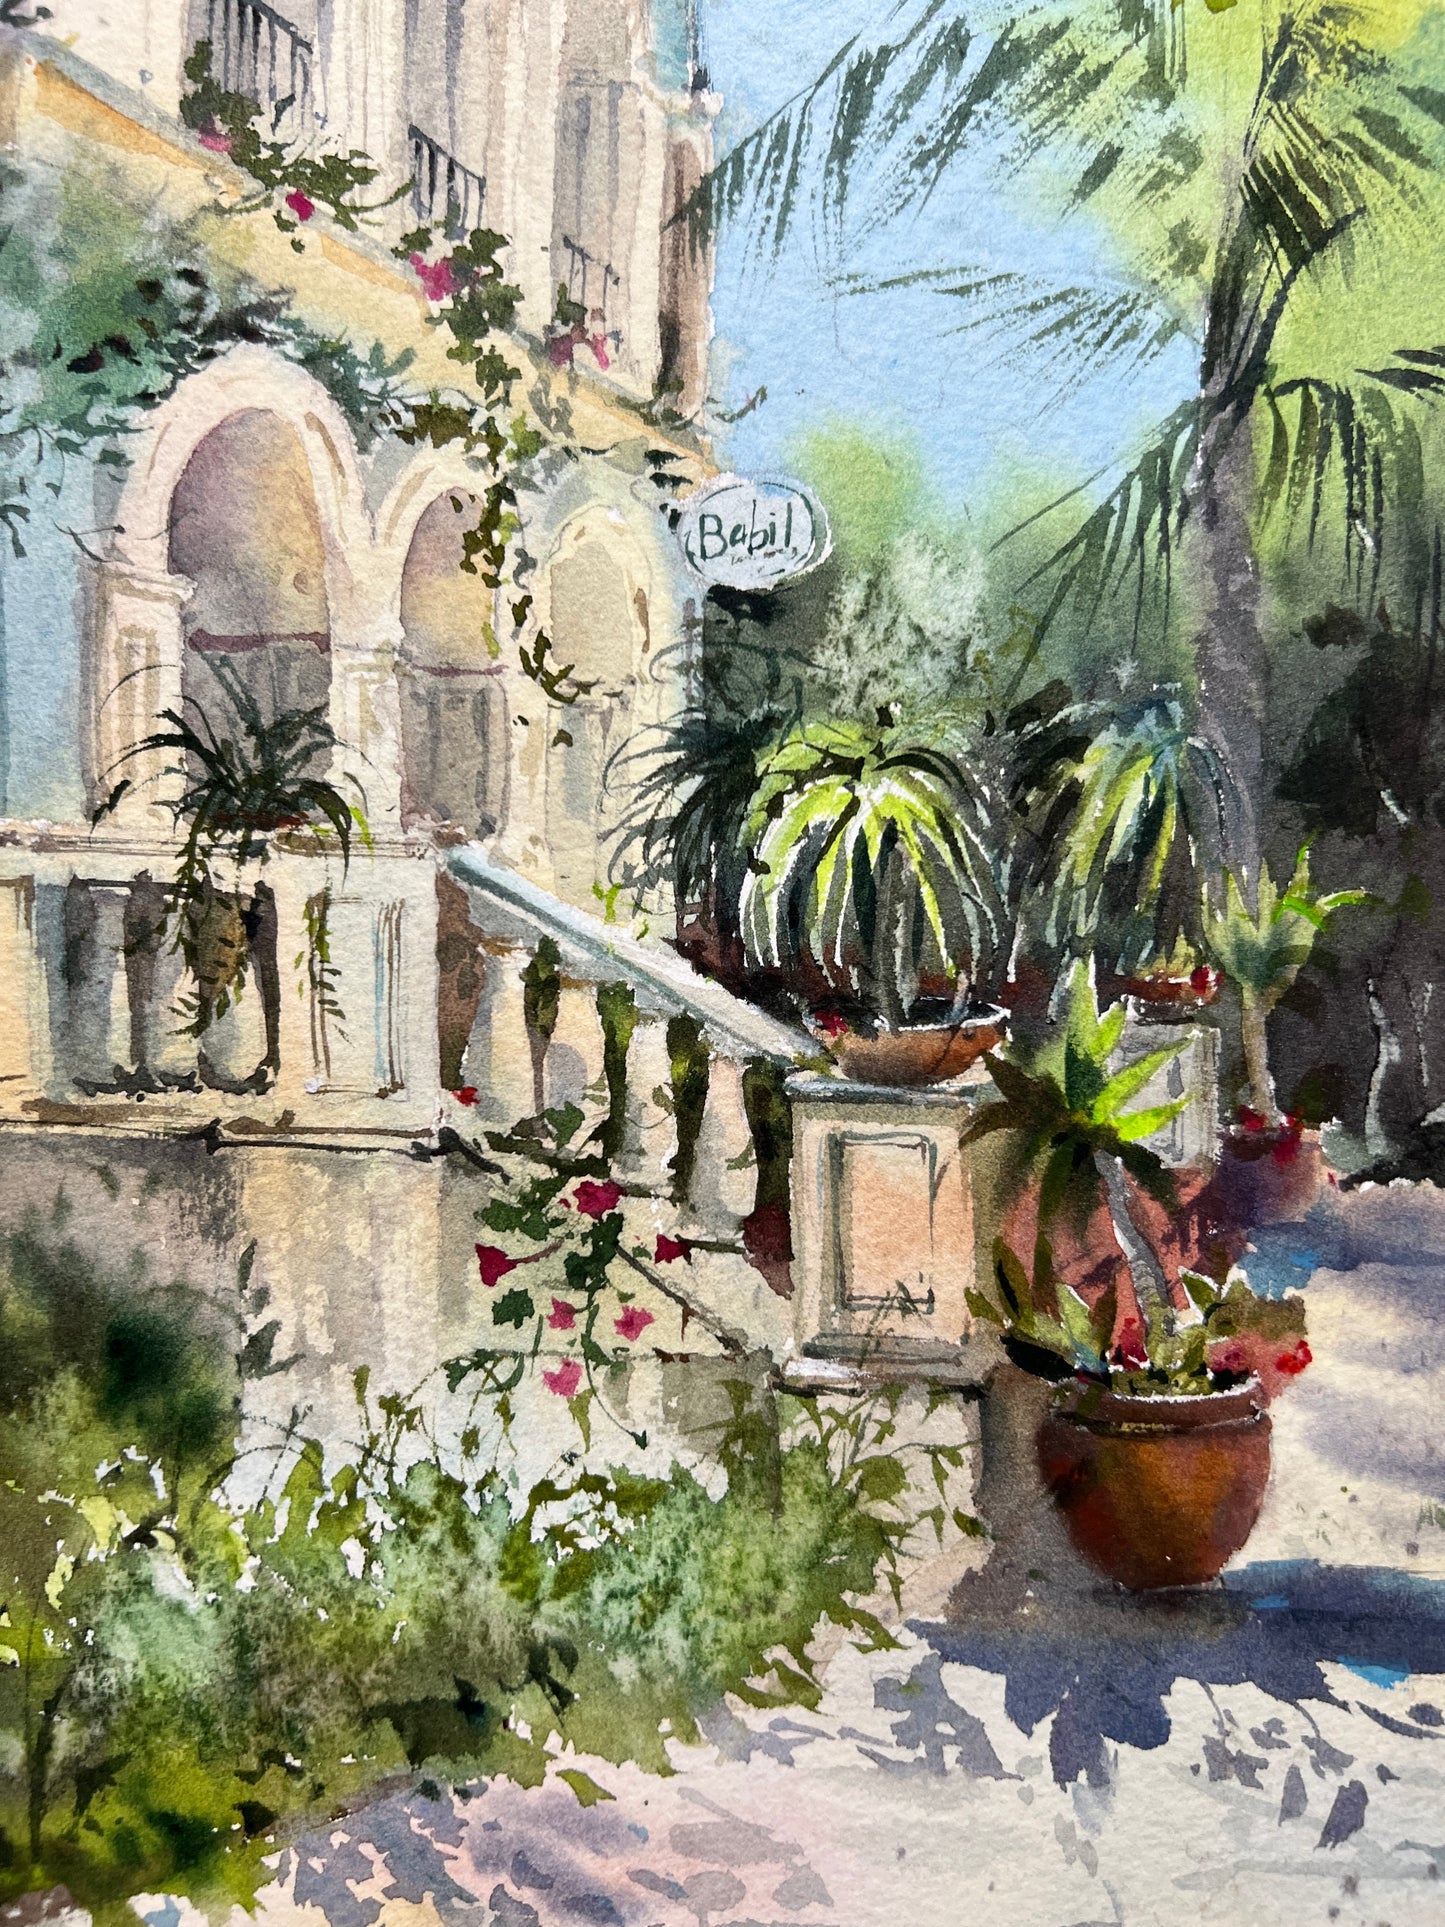 Restaurant Babil, Cyprus Watercolor Painting | Original Artwork 11x15 in